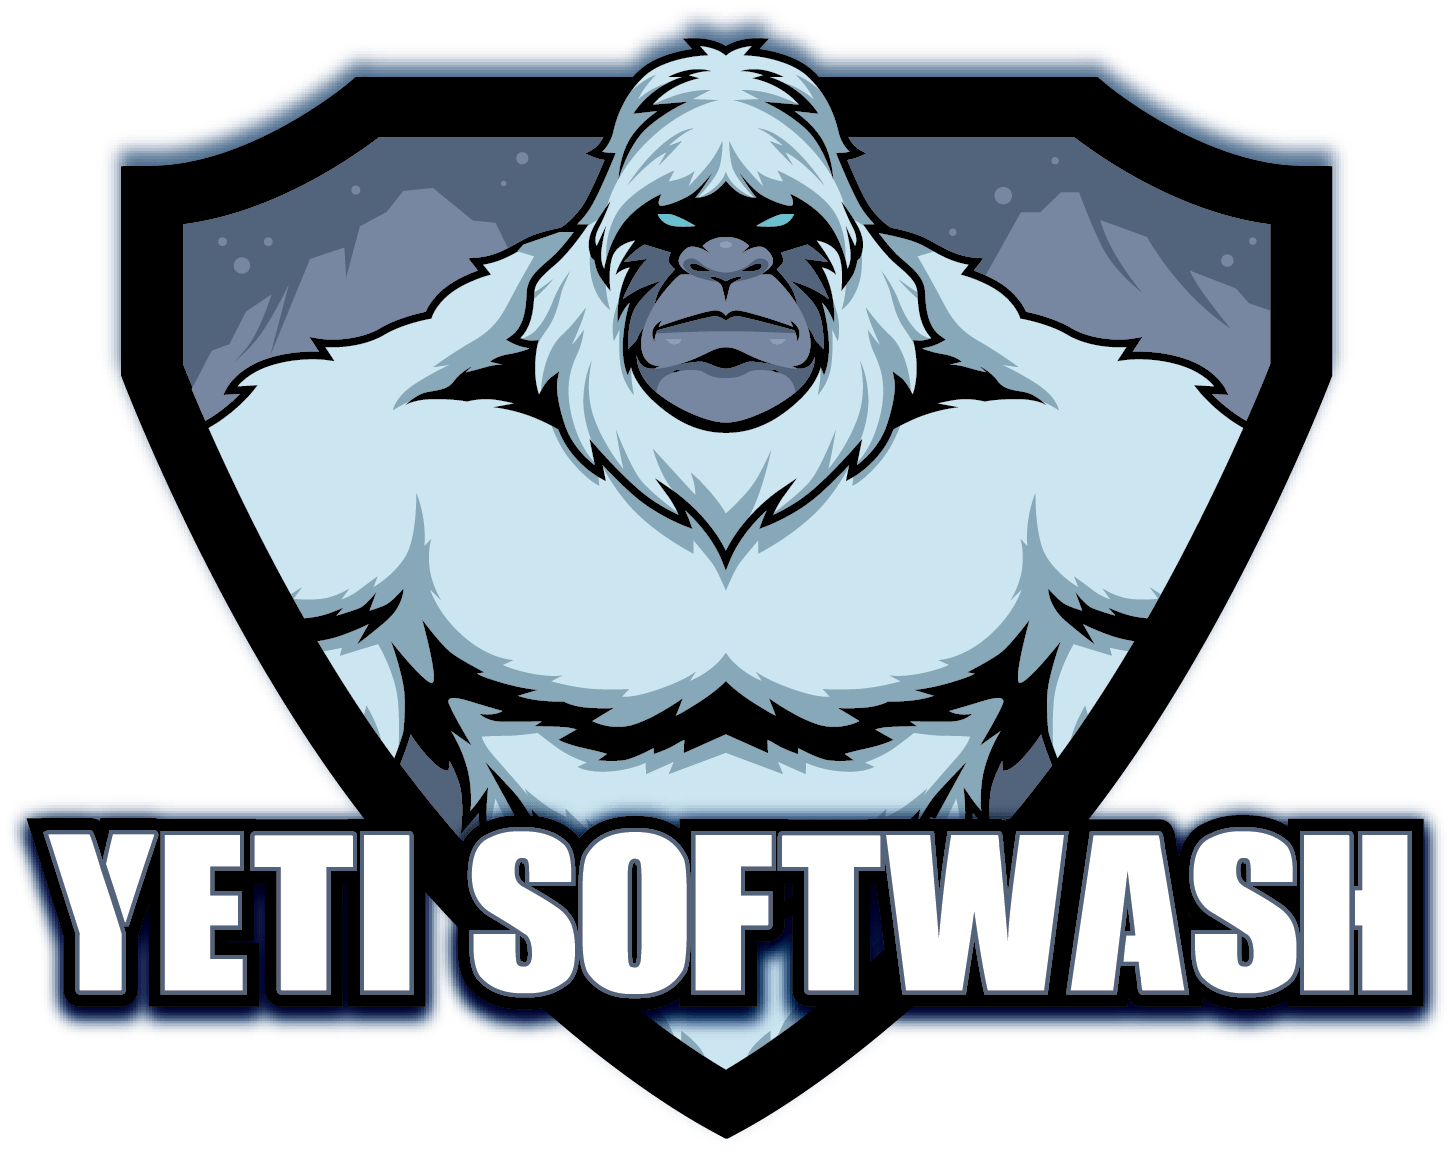 Yeti-Softwash-logo.png